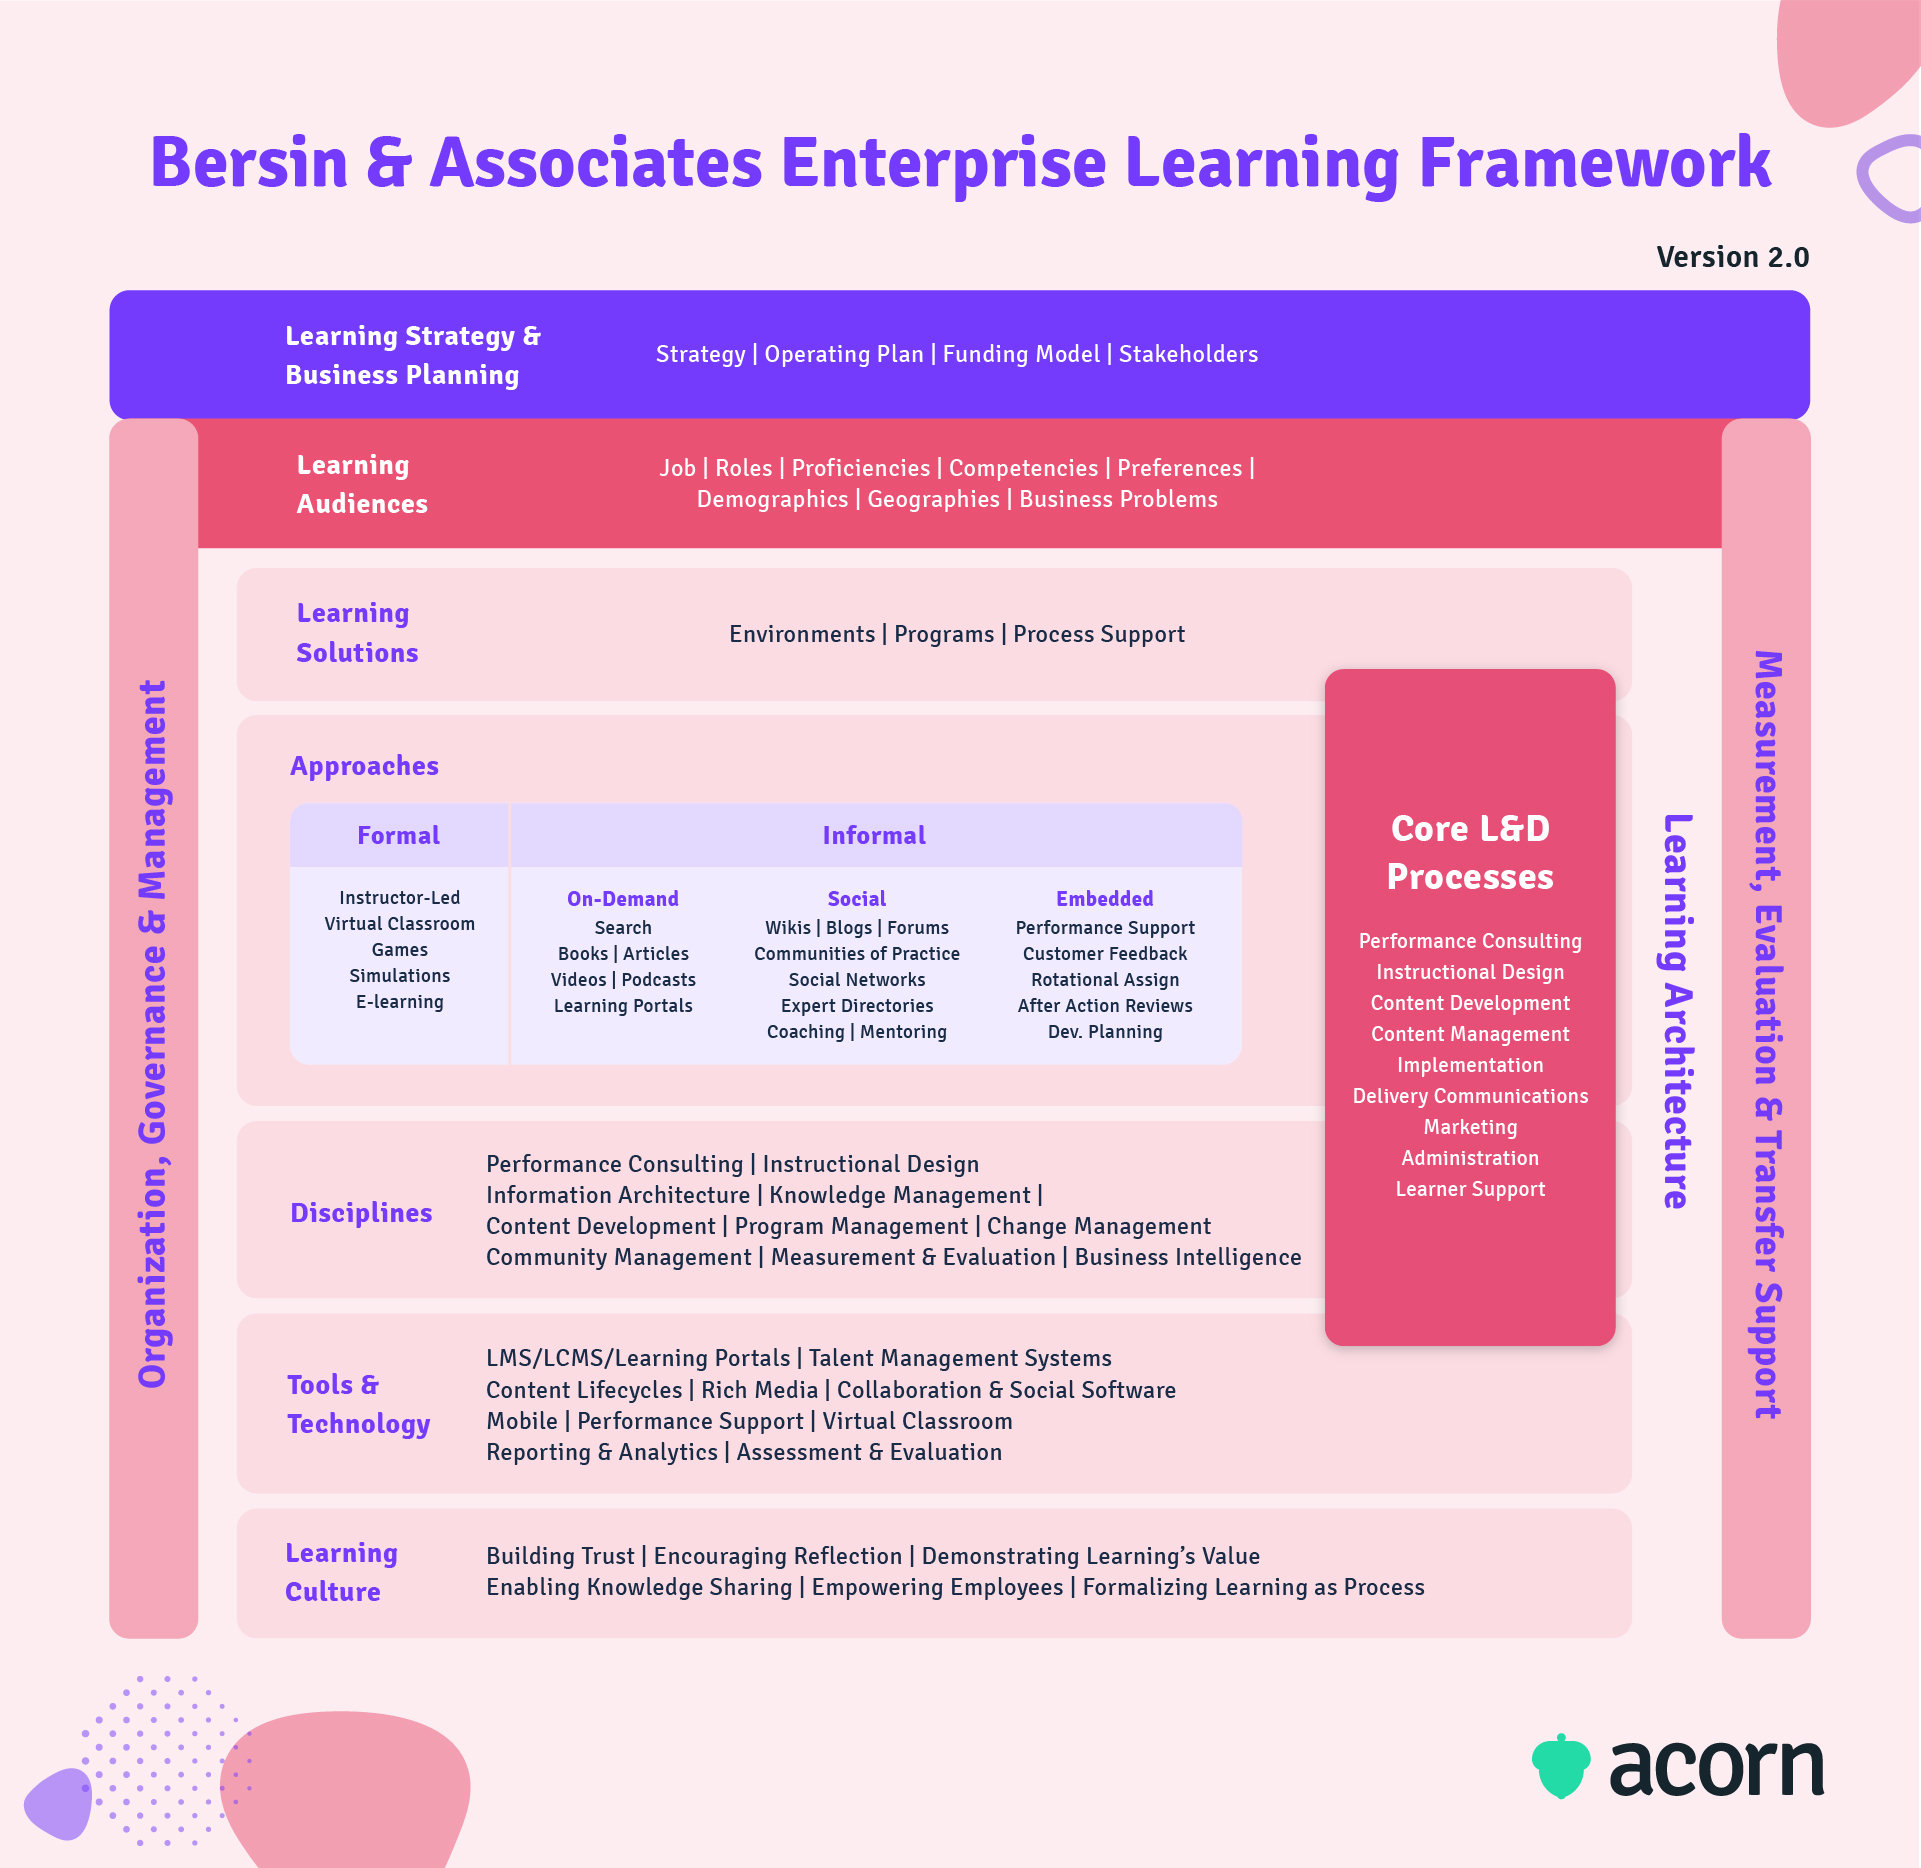 Infographic of Josh Bersin's enterprise learning framework